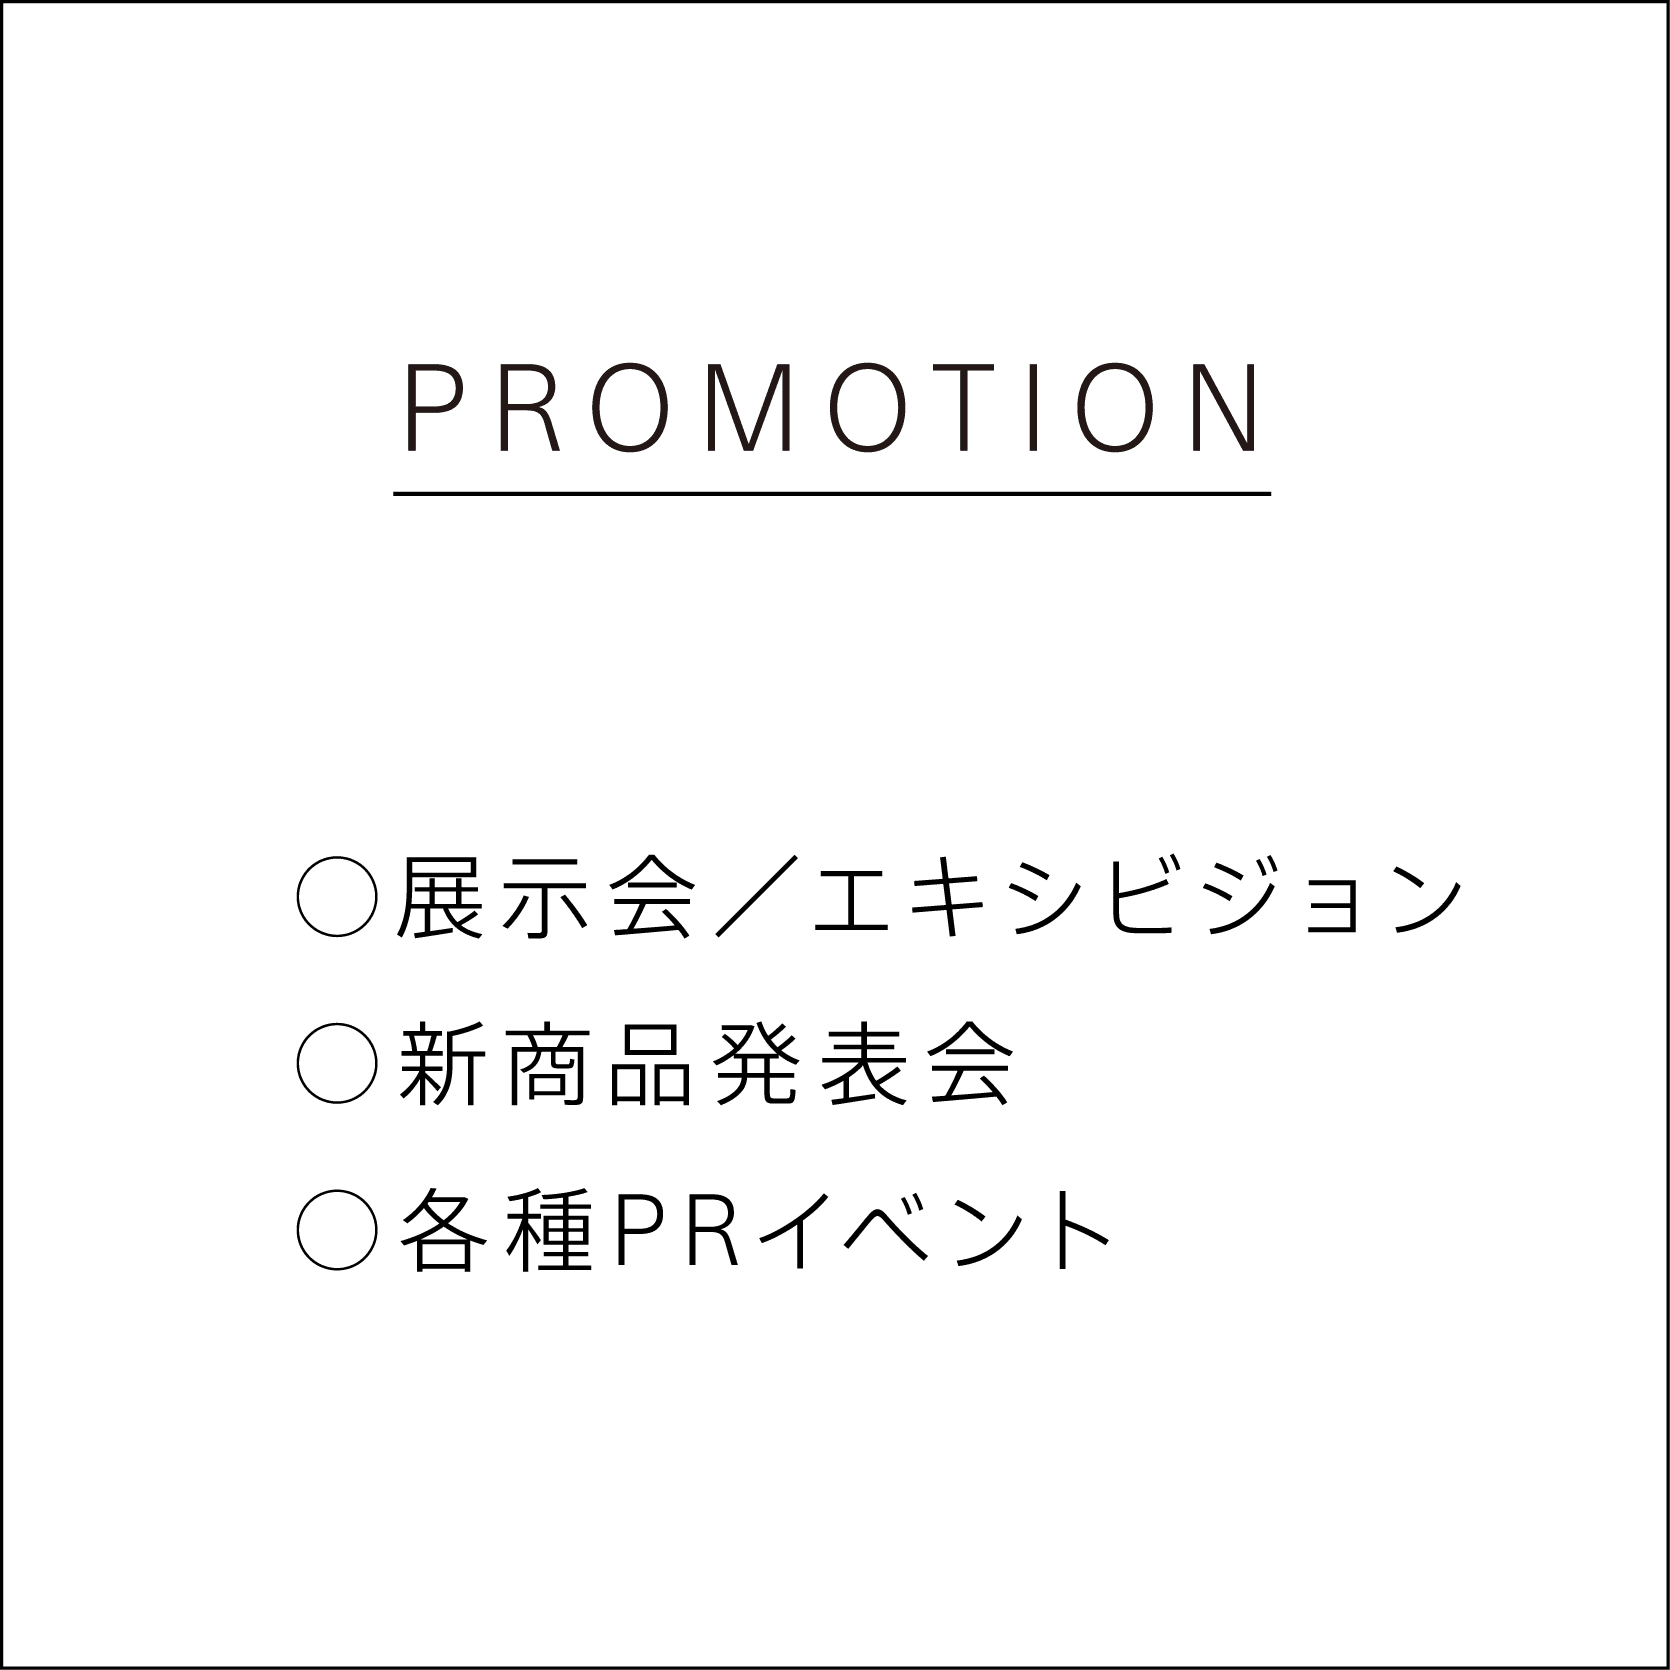 PROMOTION 展示会／エキシビジョン、新商品発表会、各種PRイベント